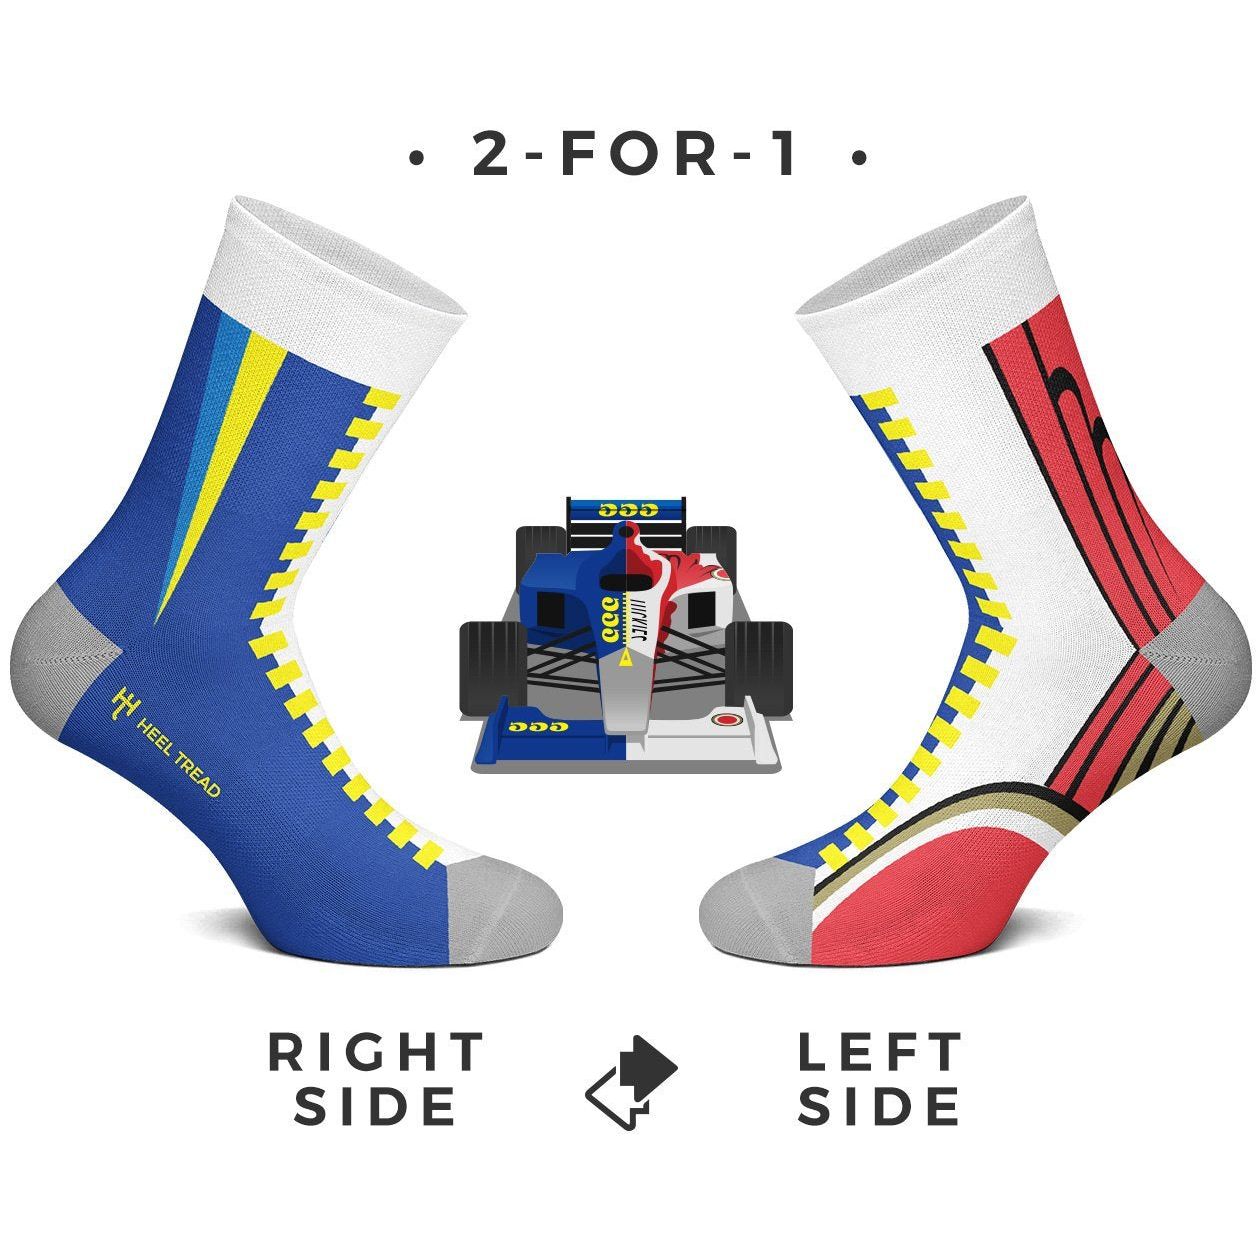 2 For 1 Socks - SMINKpower Performance Parts HT-2For1-Socks-L Heel Tread